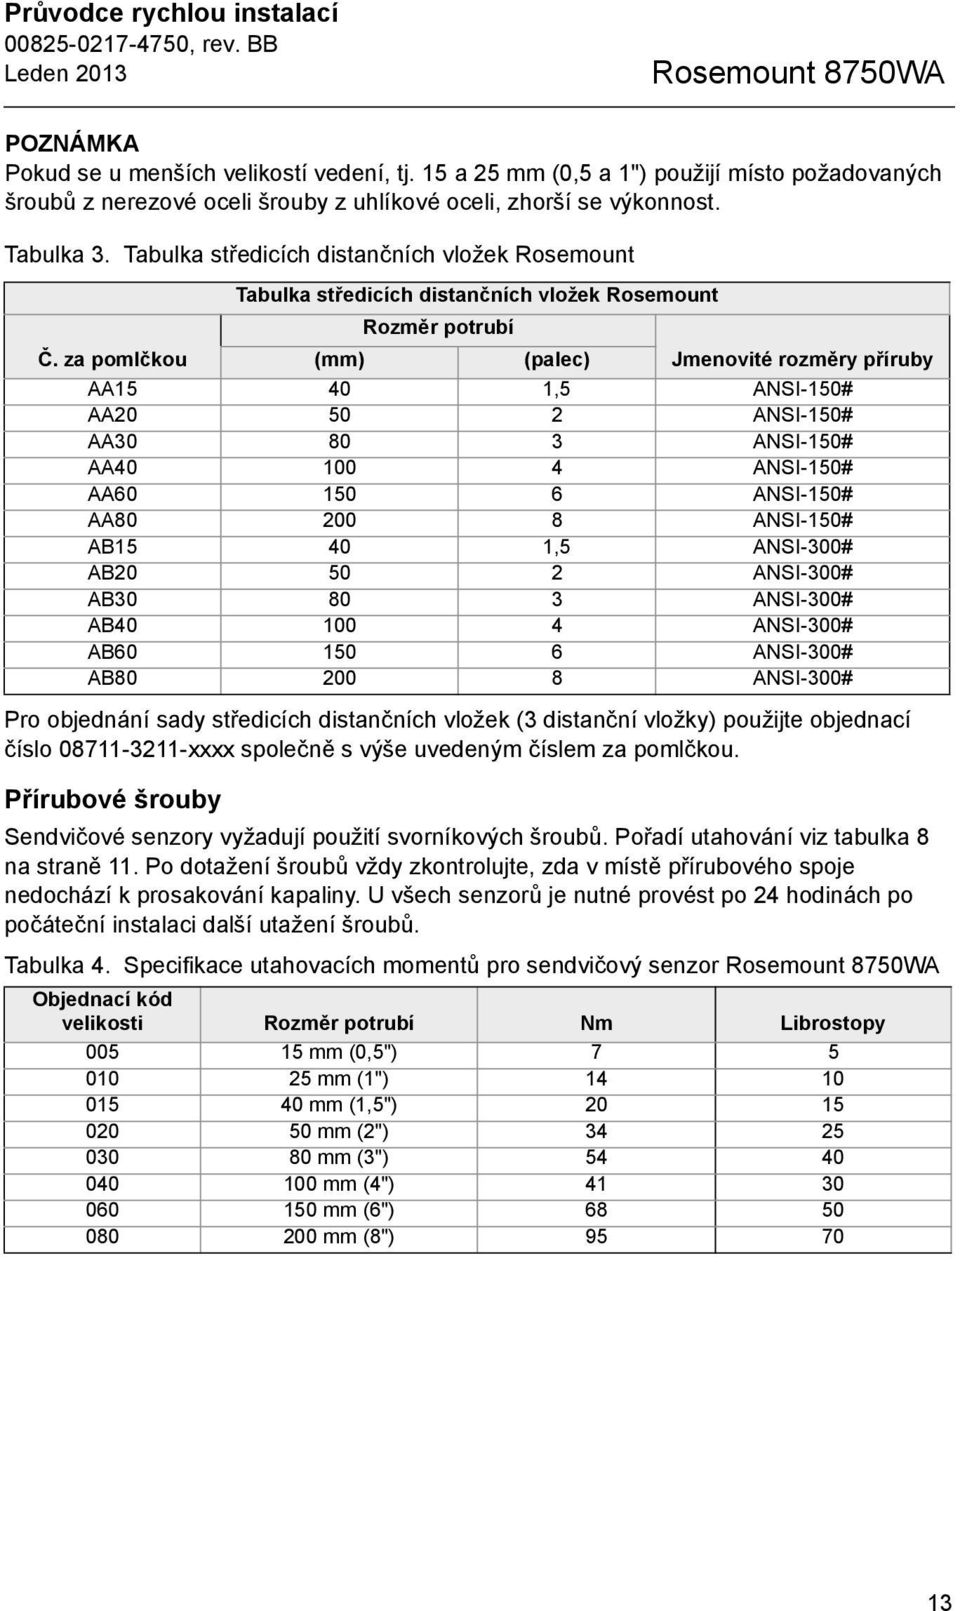 Tabulka středicích distančních vložek Rosemount Pro objednání sady středicích distančních vložek (3 distanční vložky) použijte objednací číslo 08711-3211-xxxx společně s výše uvedeným číslem za